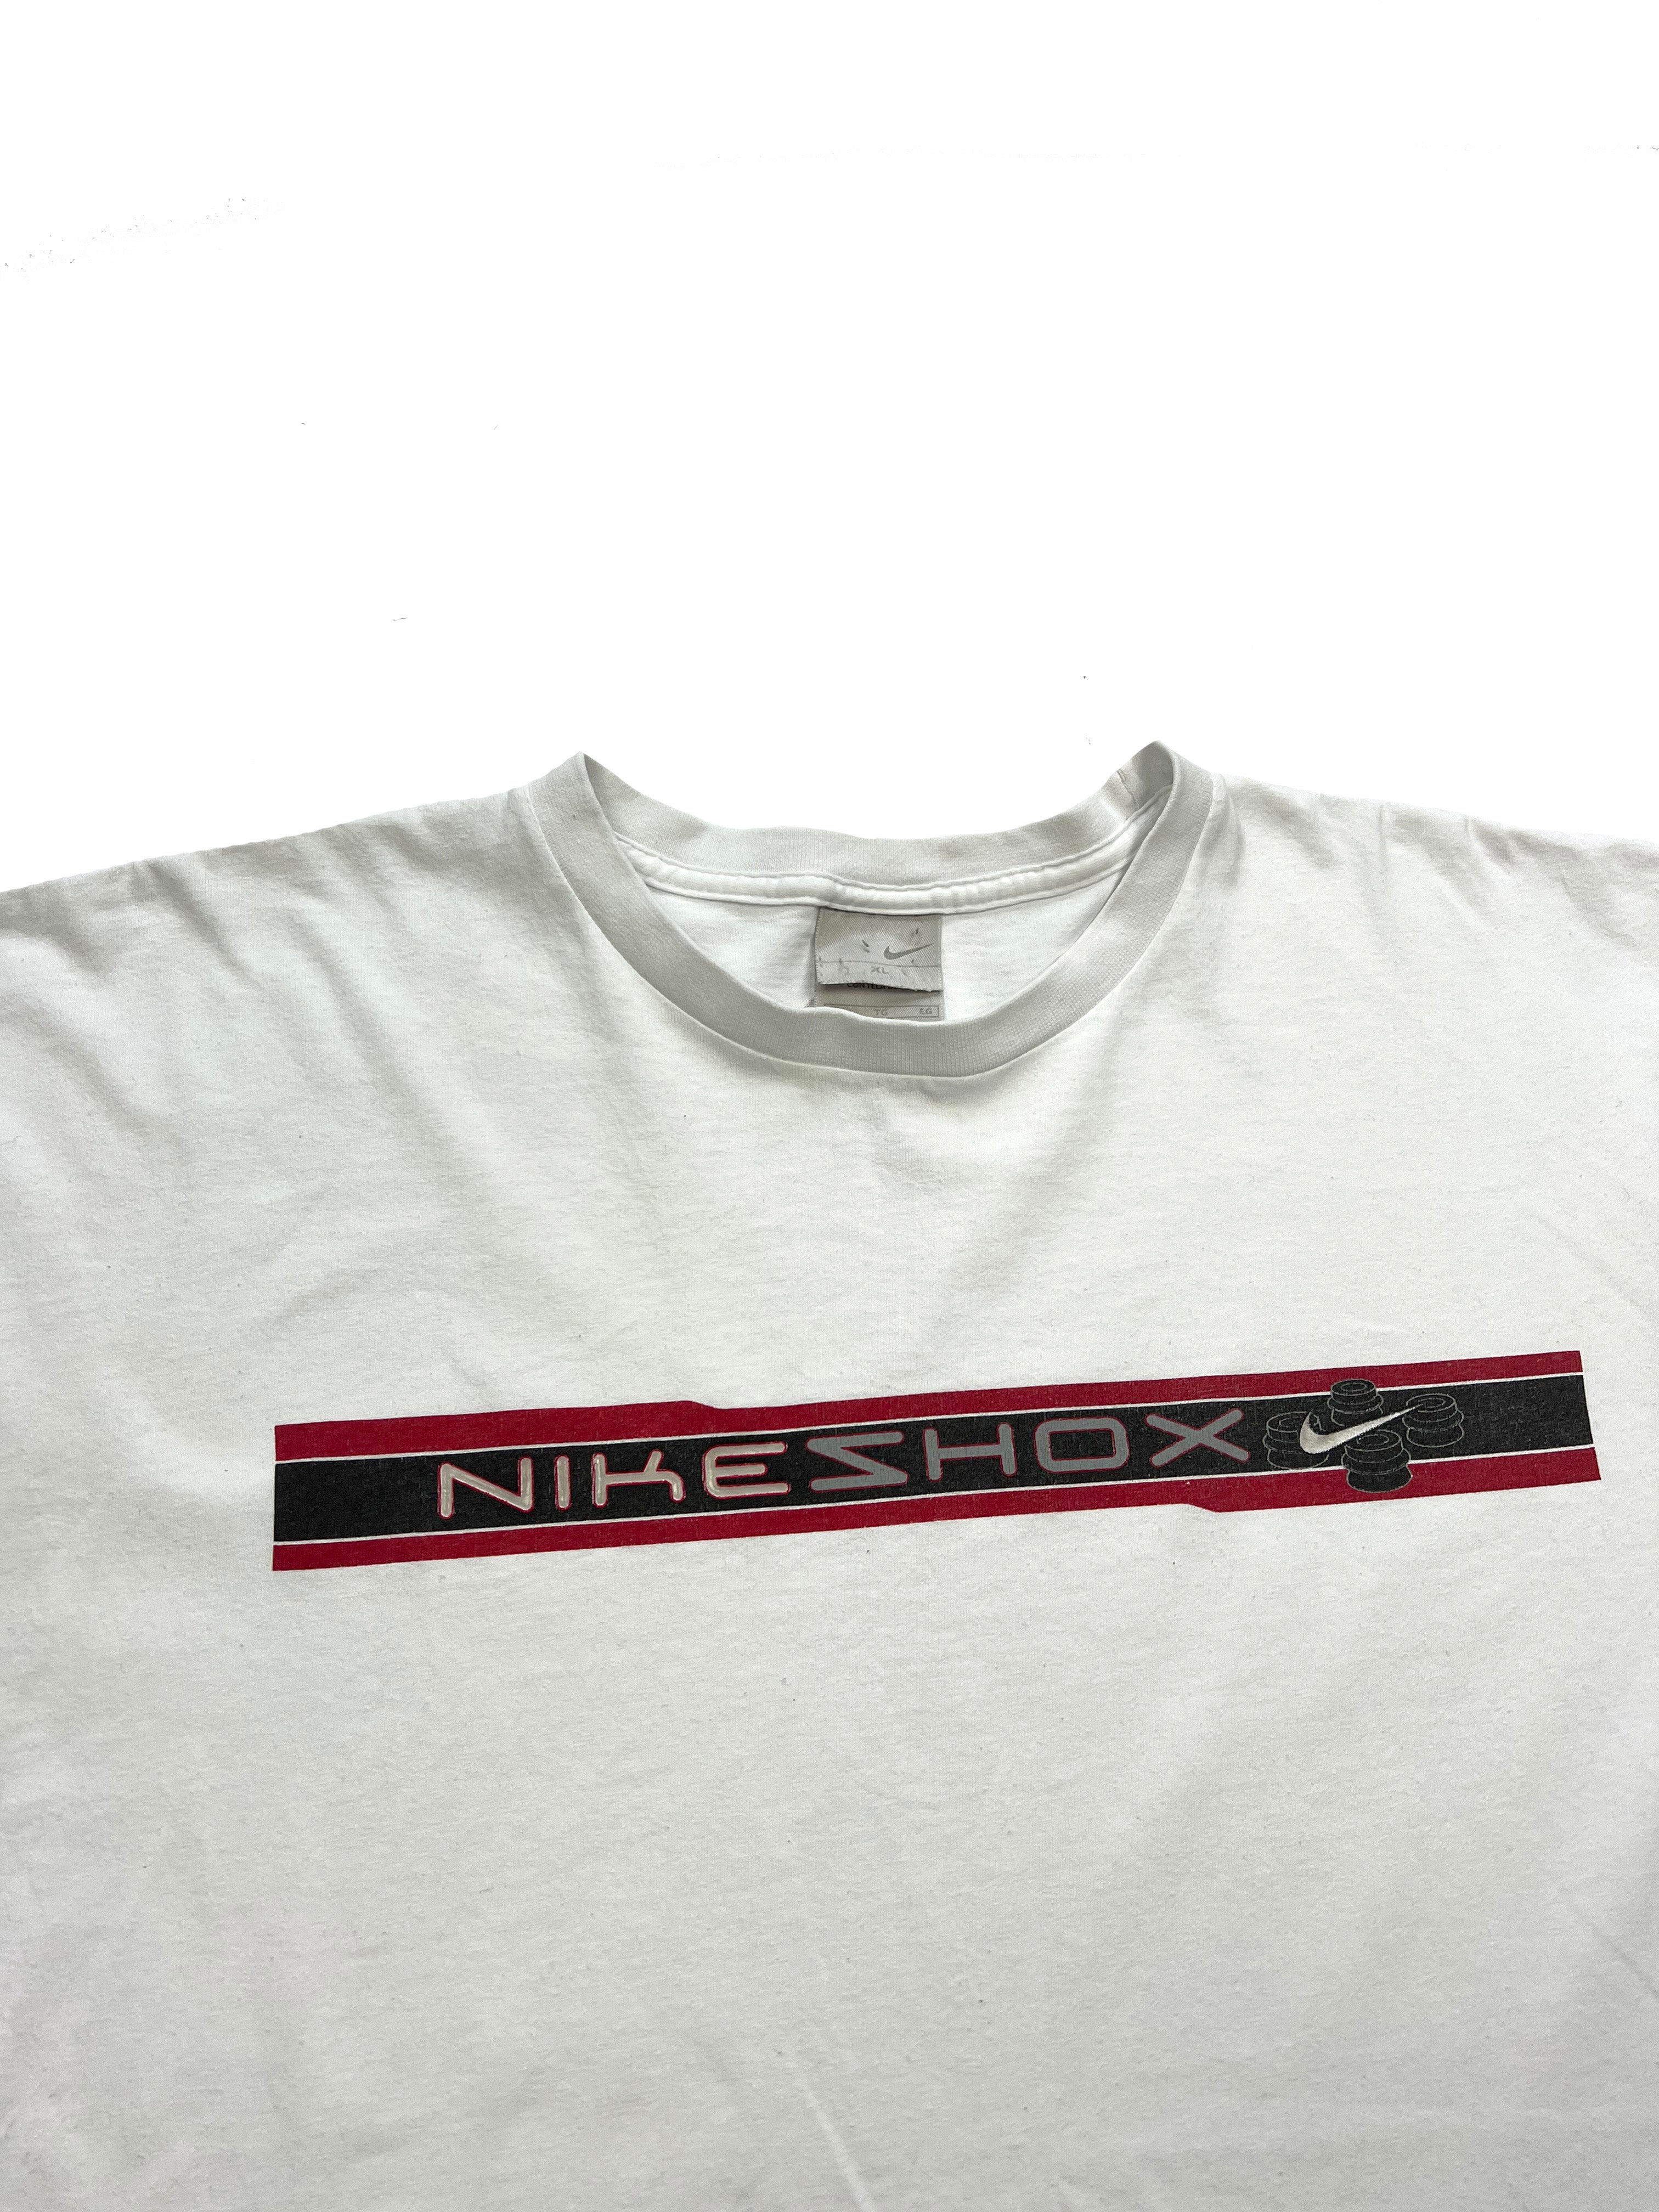 Nike Shox T-shirt 00's